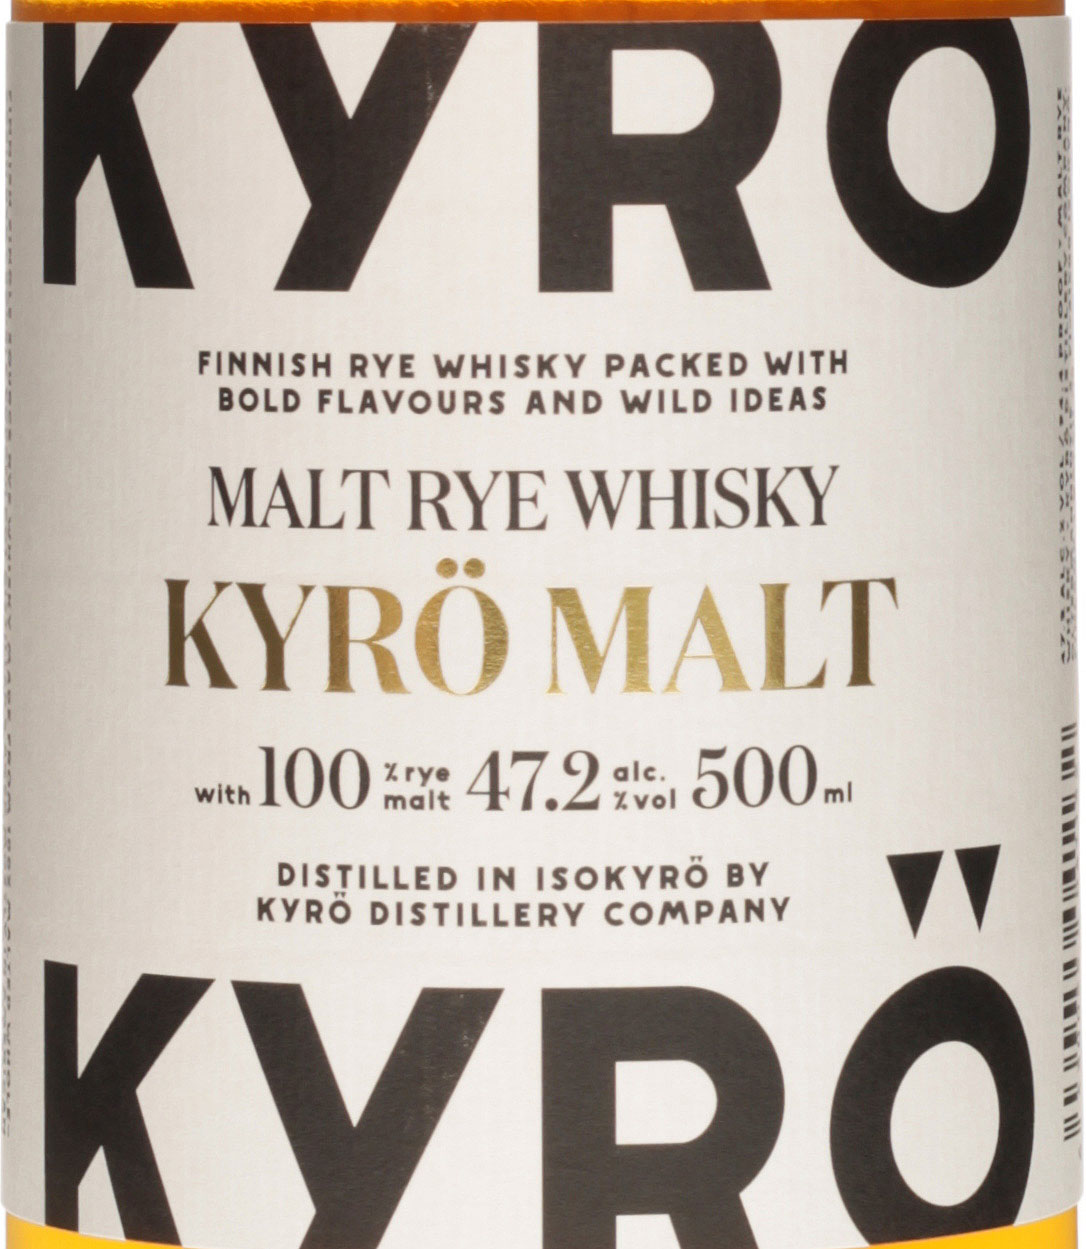 hier S aus Finnland Kyrö im Malt Rye Spirituosen Whisky